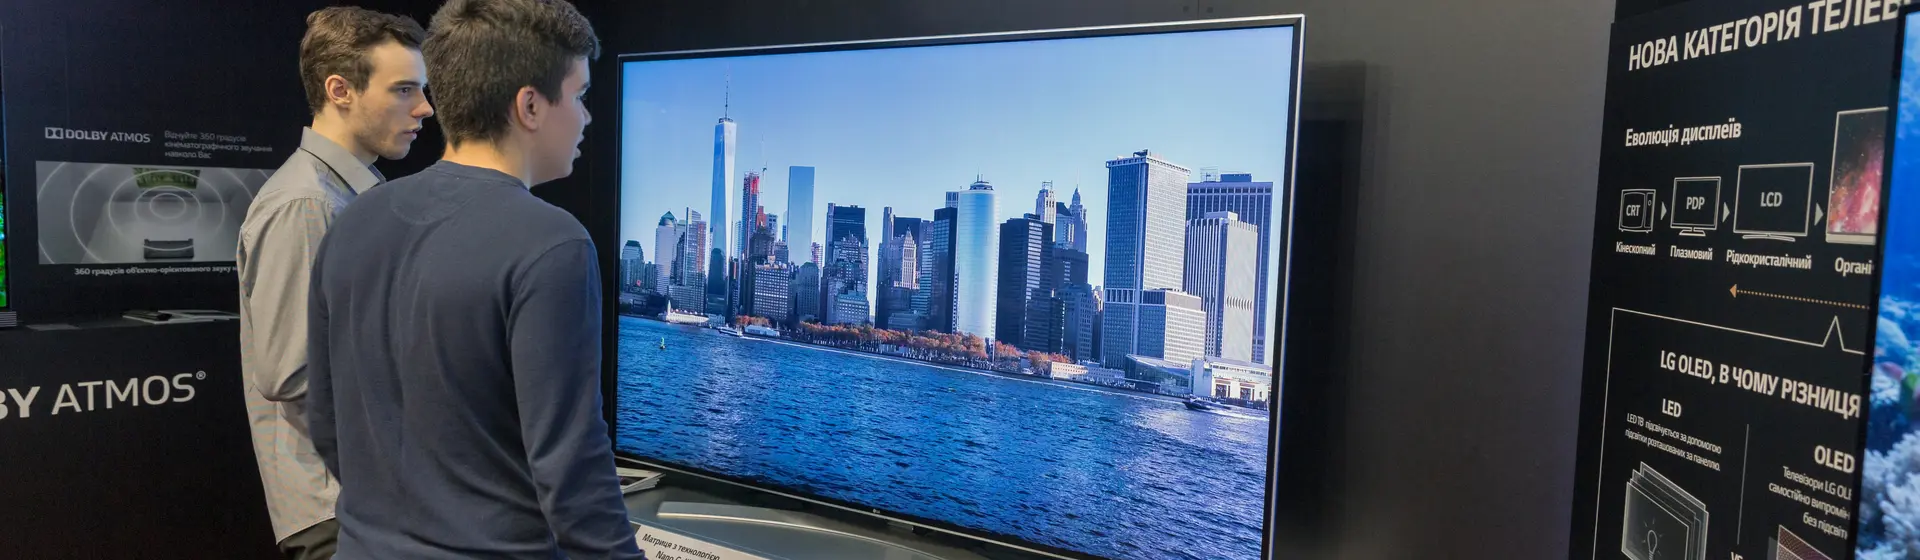 Dois homens em pé em frente a uma TV LG exibindo imagem de paisagem de cidade litorânea na tela